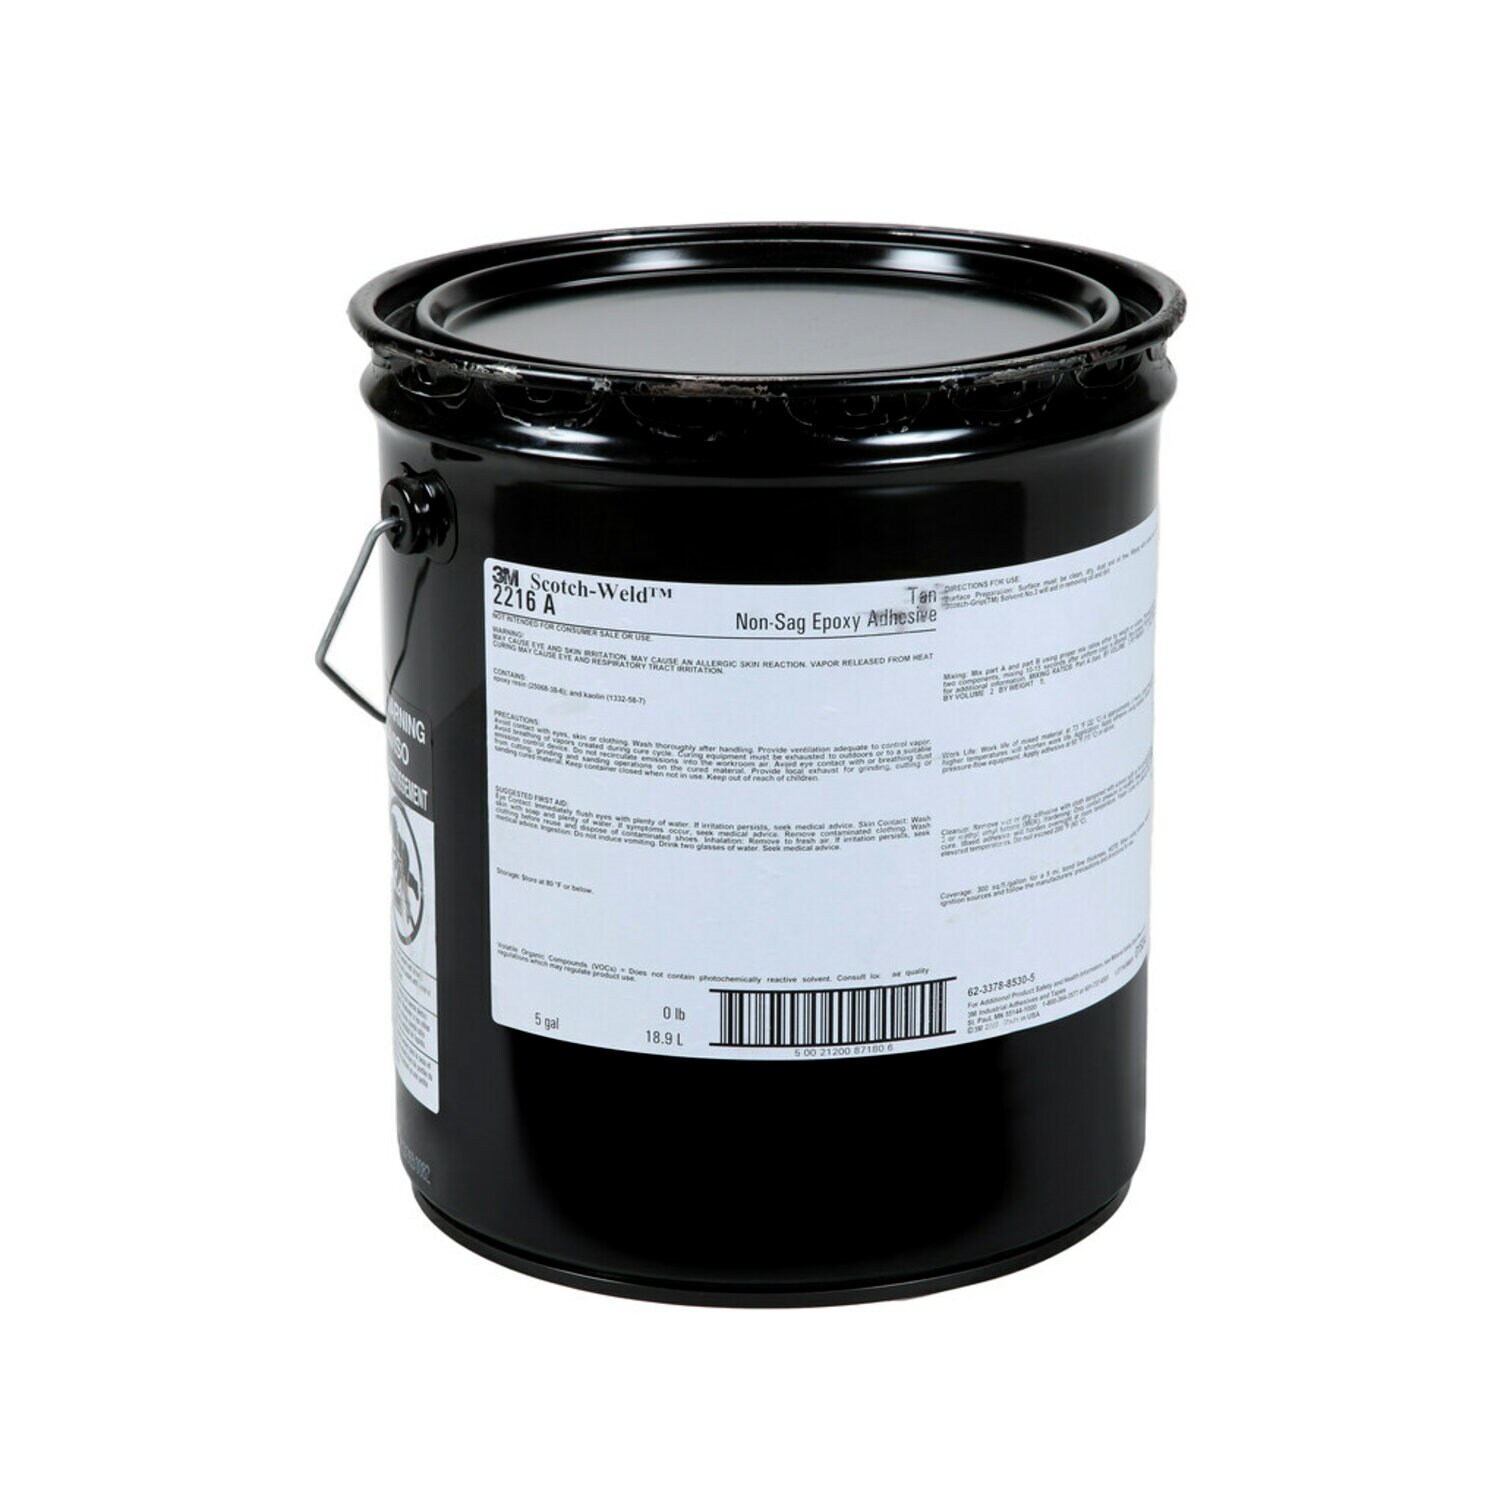 7010367414 - 3M Scotch-Weld Epoxy Adhesive 2216NS, Tan, Part A, 5 Gallon (Pail),
Drum